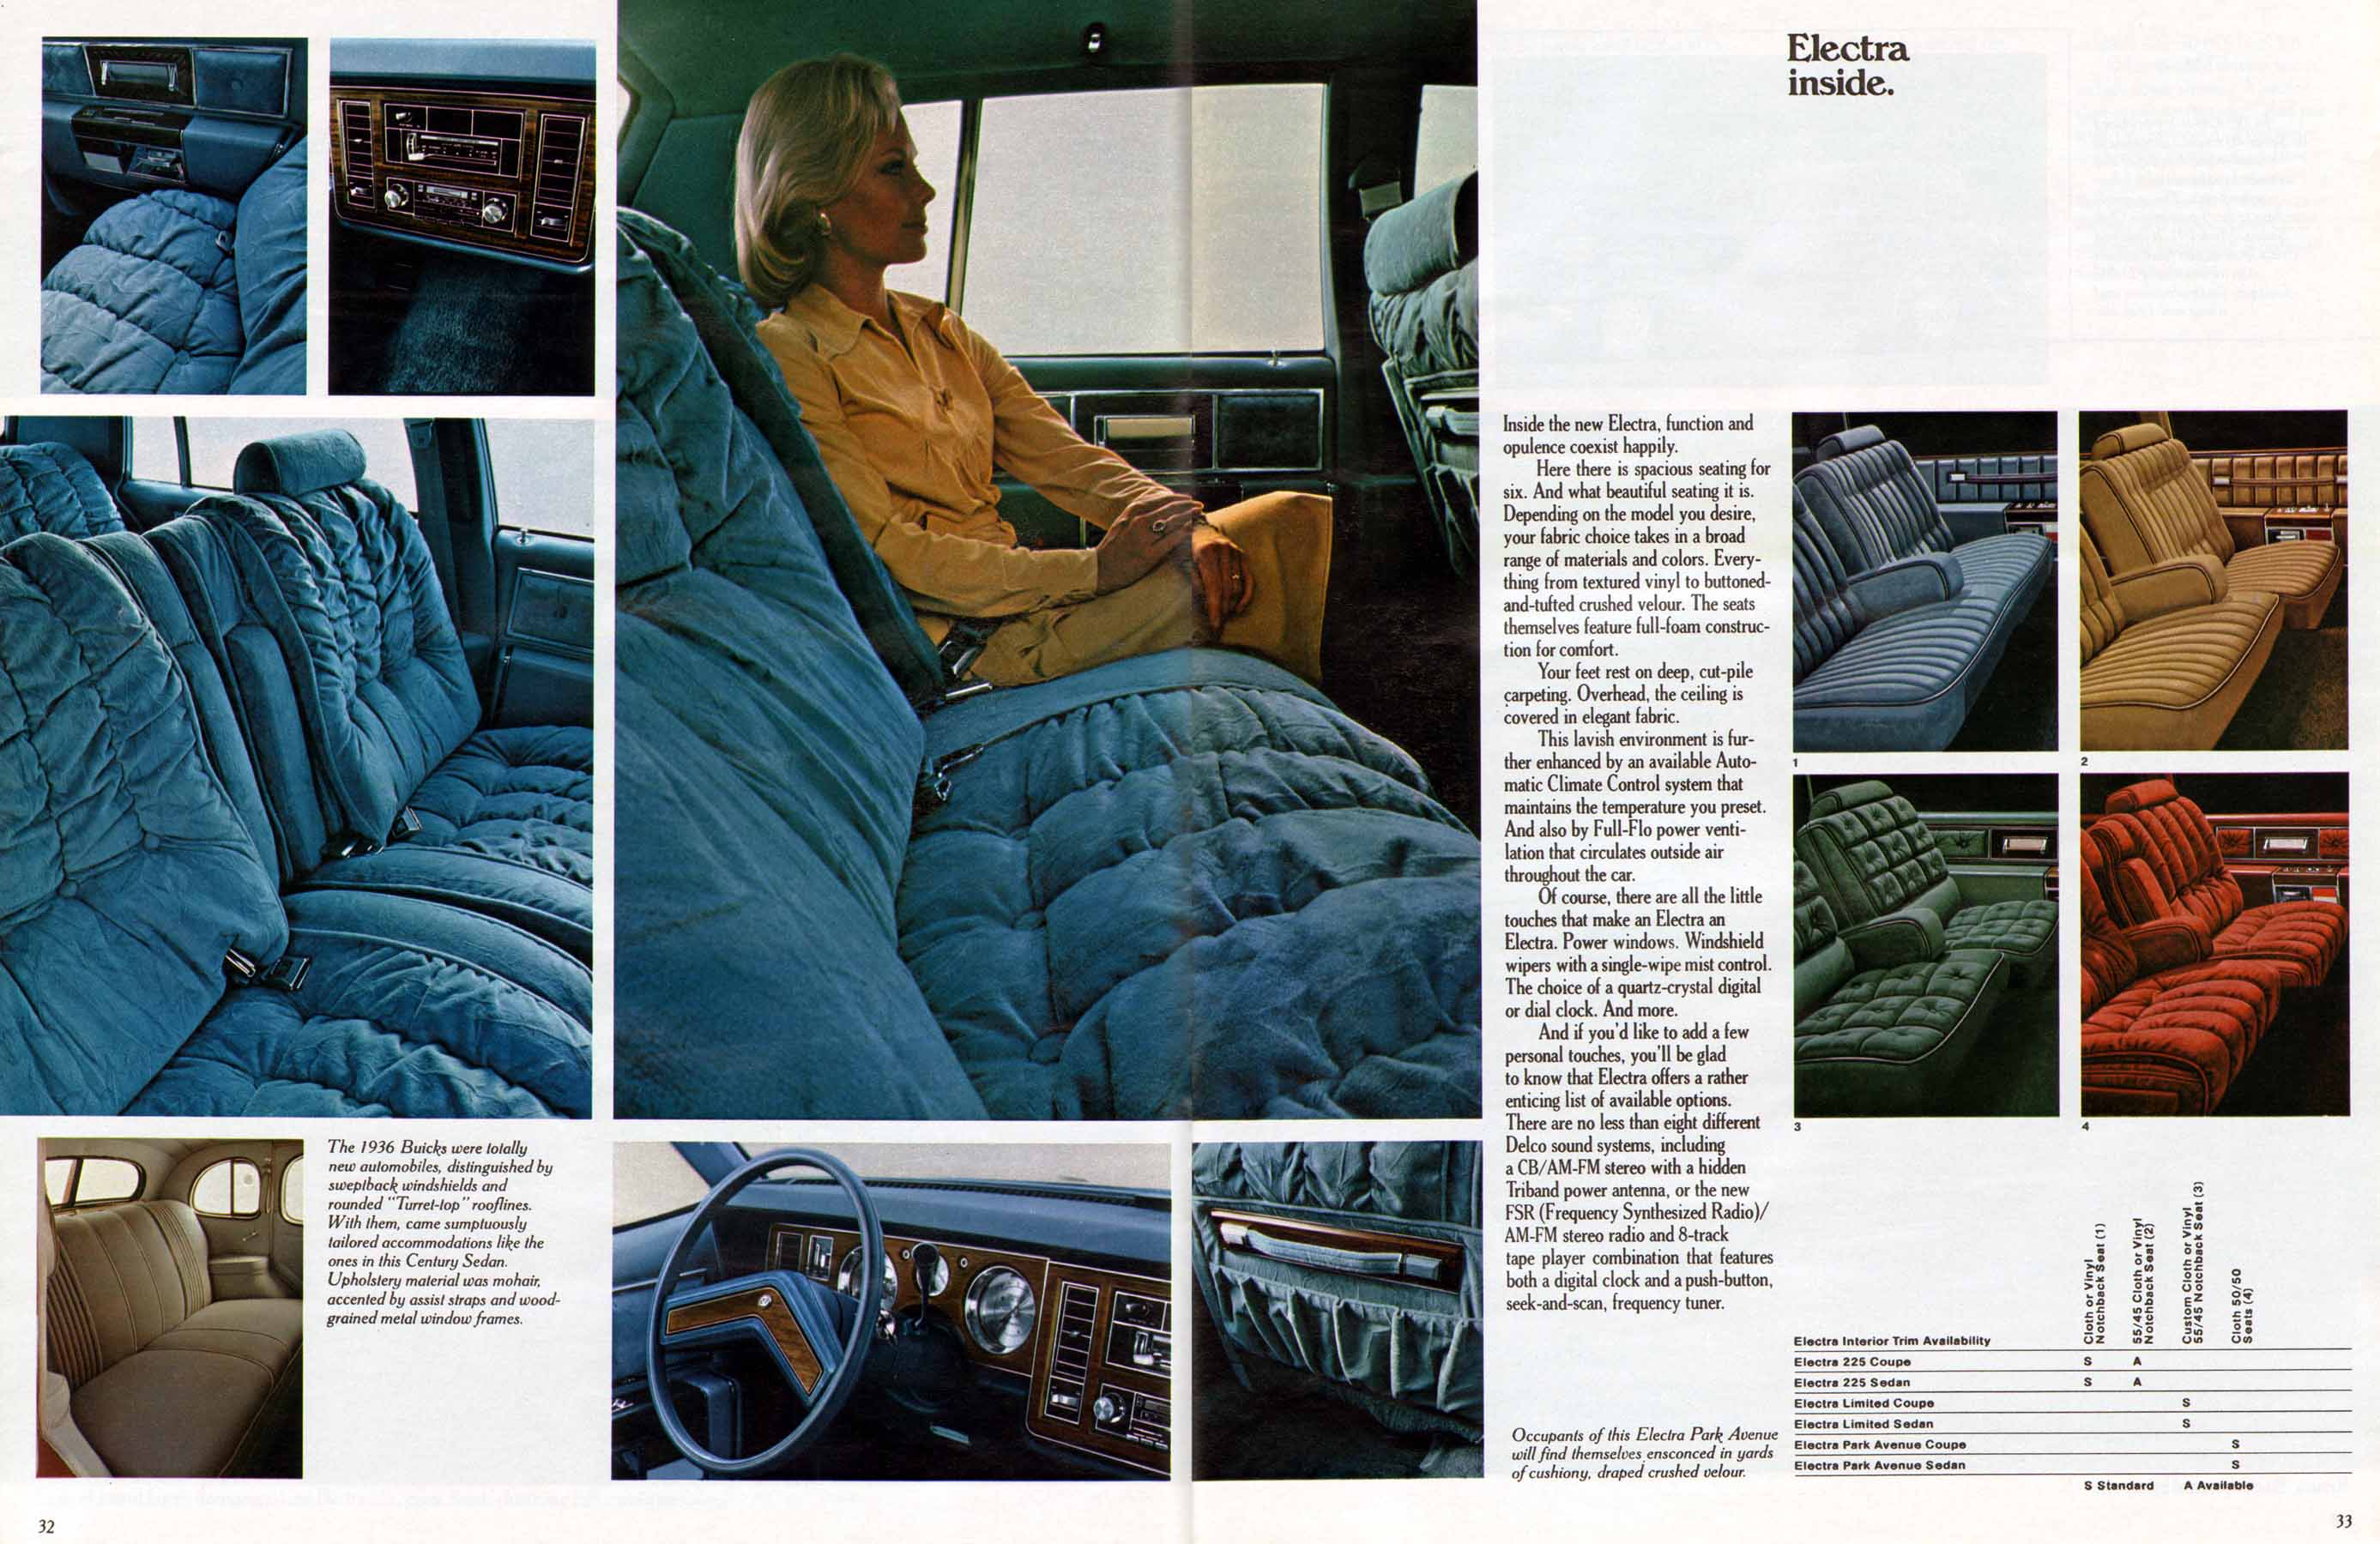 1978 Buick Full Line Prestige-32-33